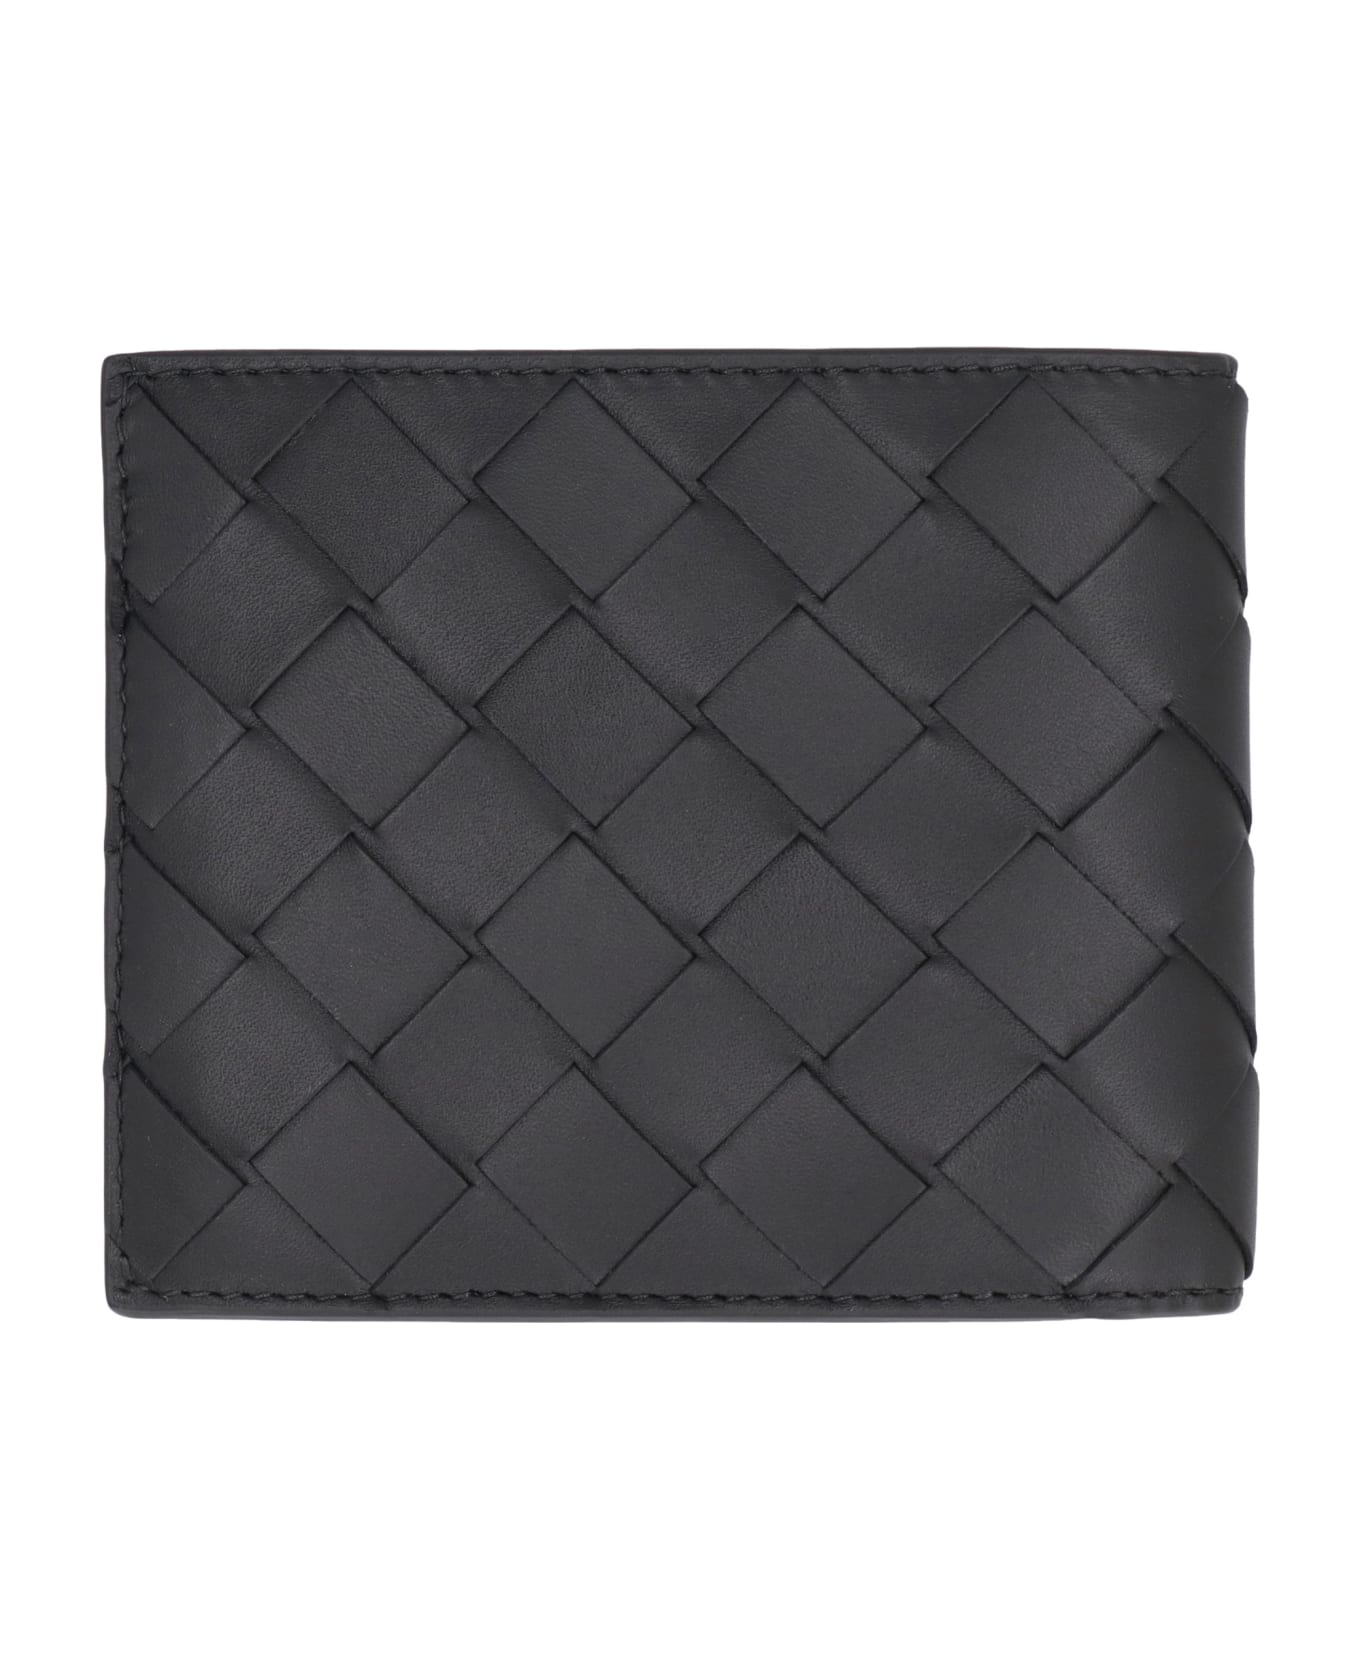 Bottega Veneta Intrecciato Bi-fold Wallet - black 財布